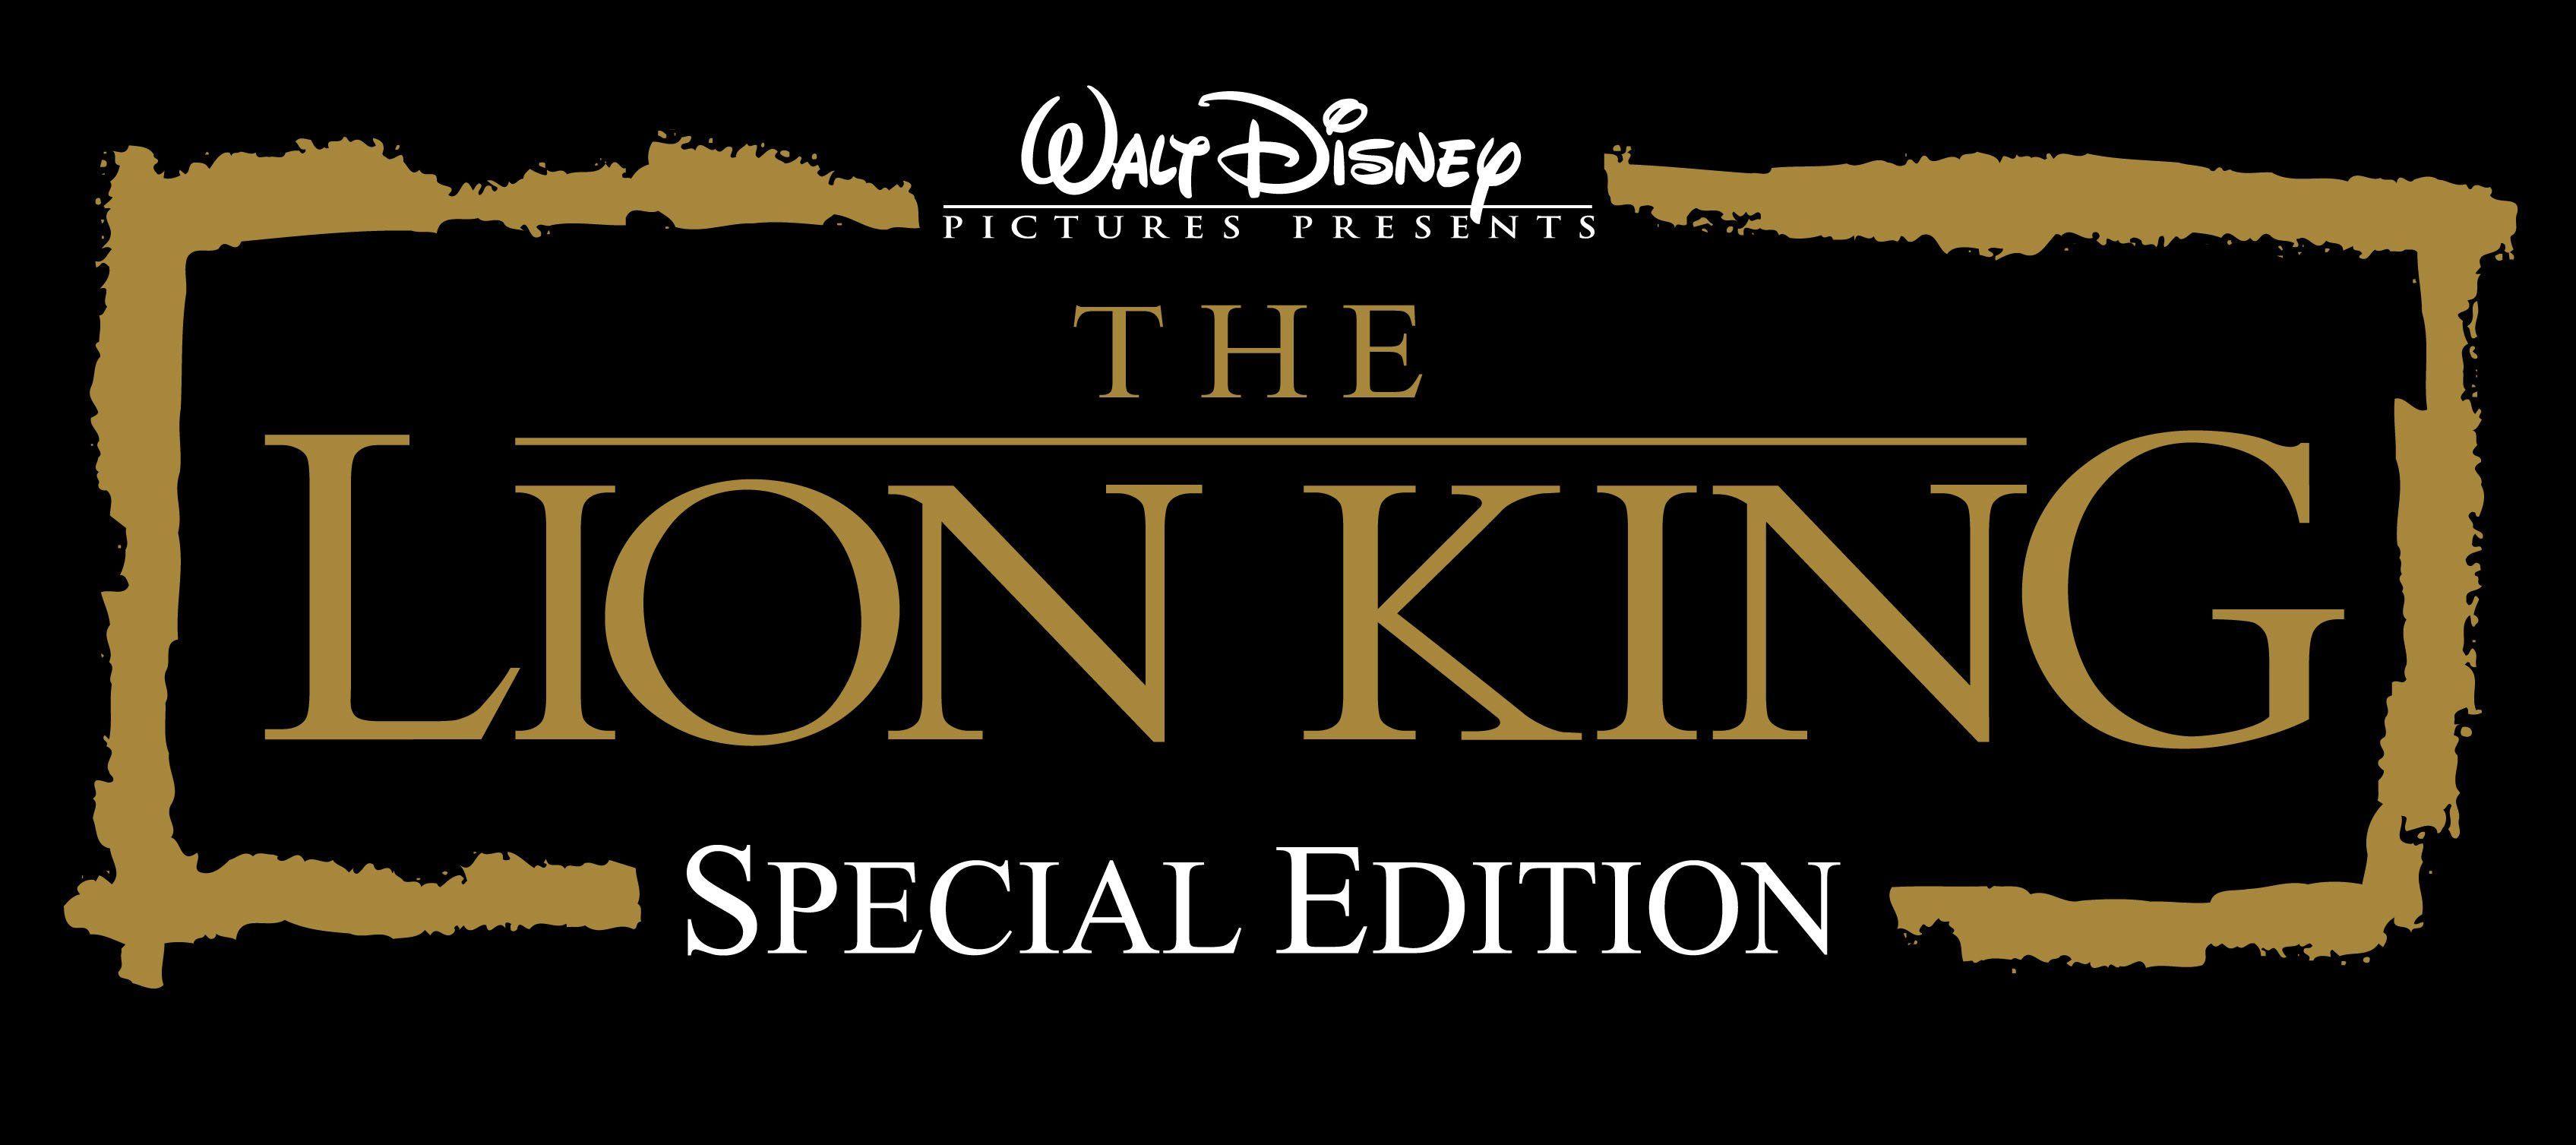 The Lion King Movie Logo - The lion king Logos